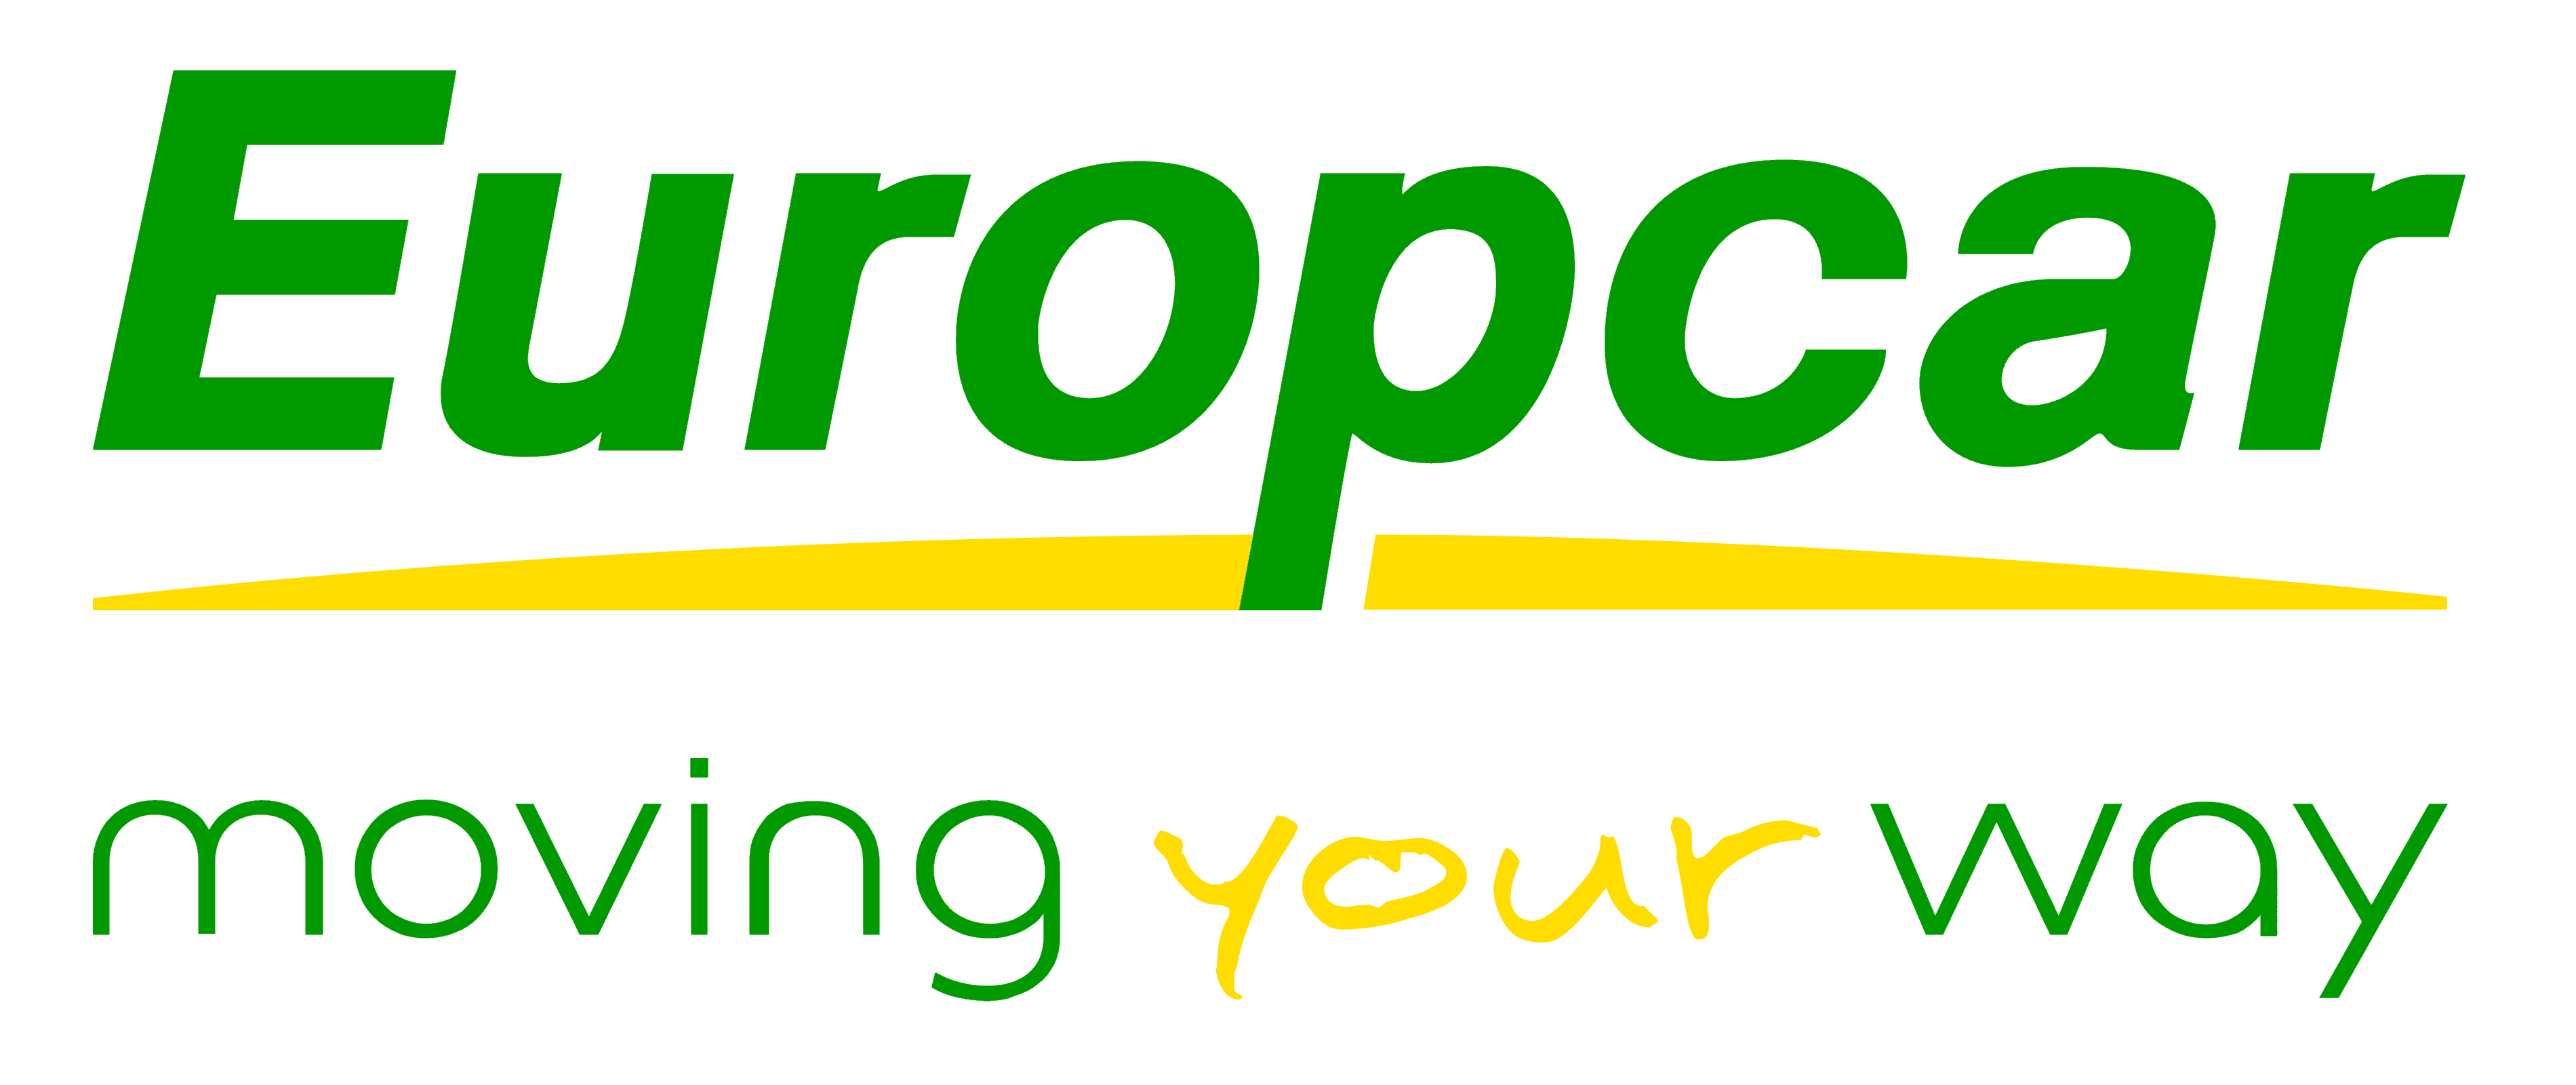 Europcar Logo - Europcar – Logos, brands and logotypes